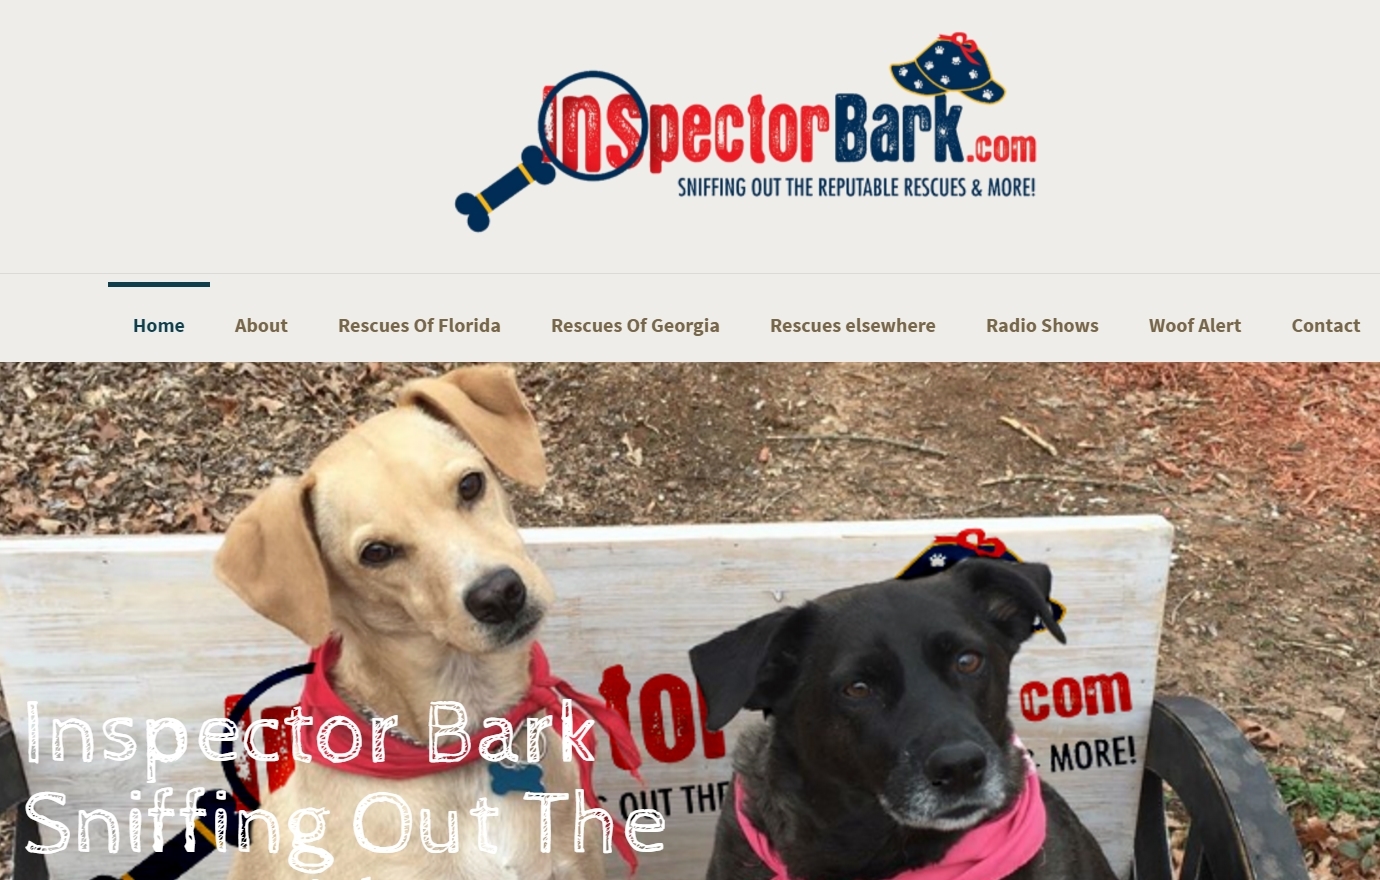 Inspector Bark